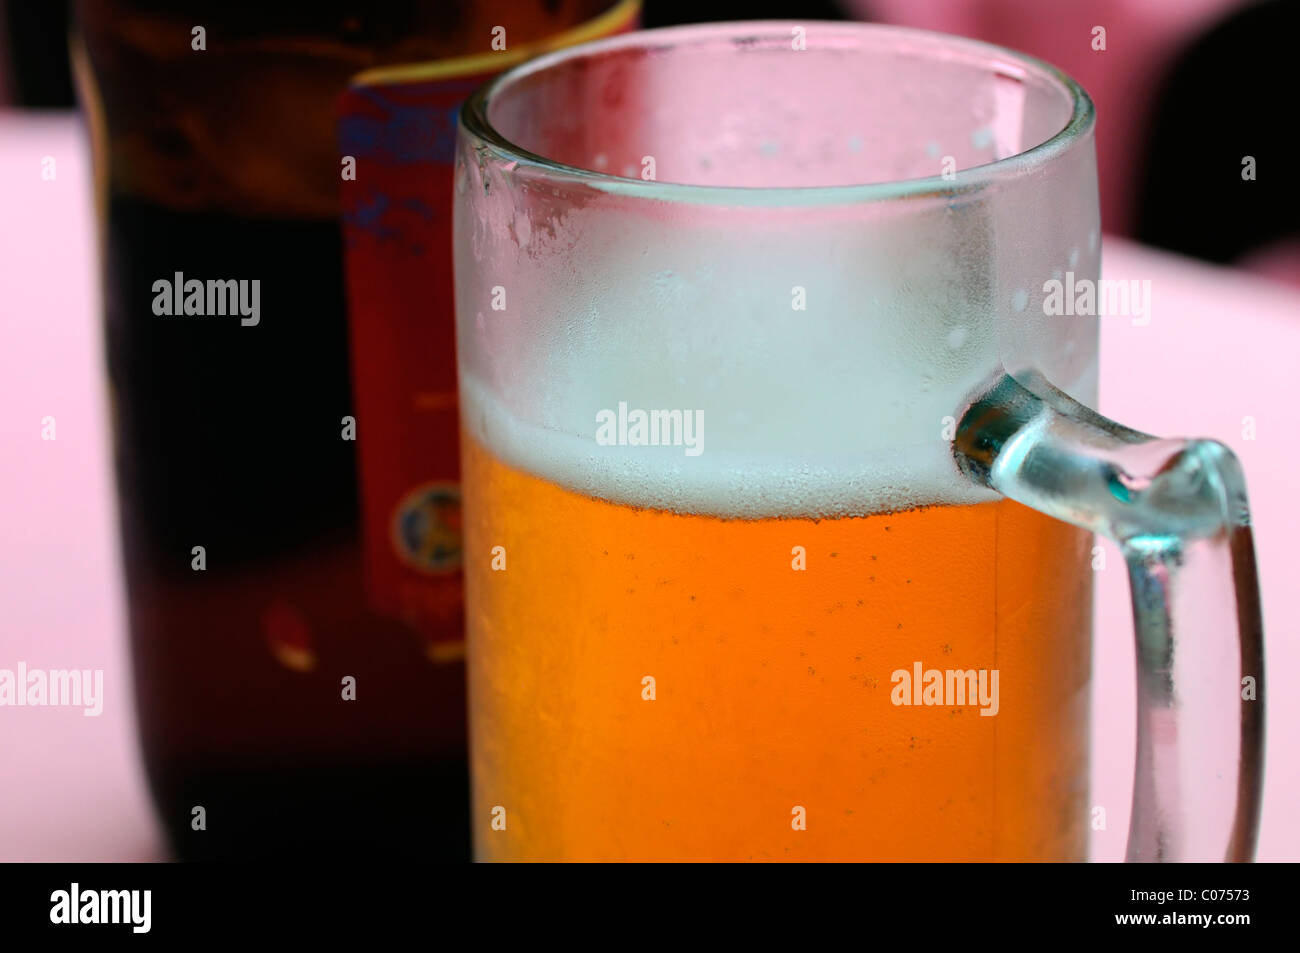 Vaso de cerveza lager alcohol beber bebida medio vacío medio lleno un refresco Foto de stock